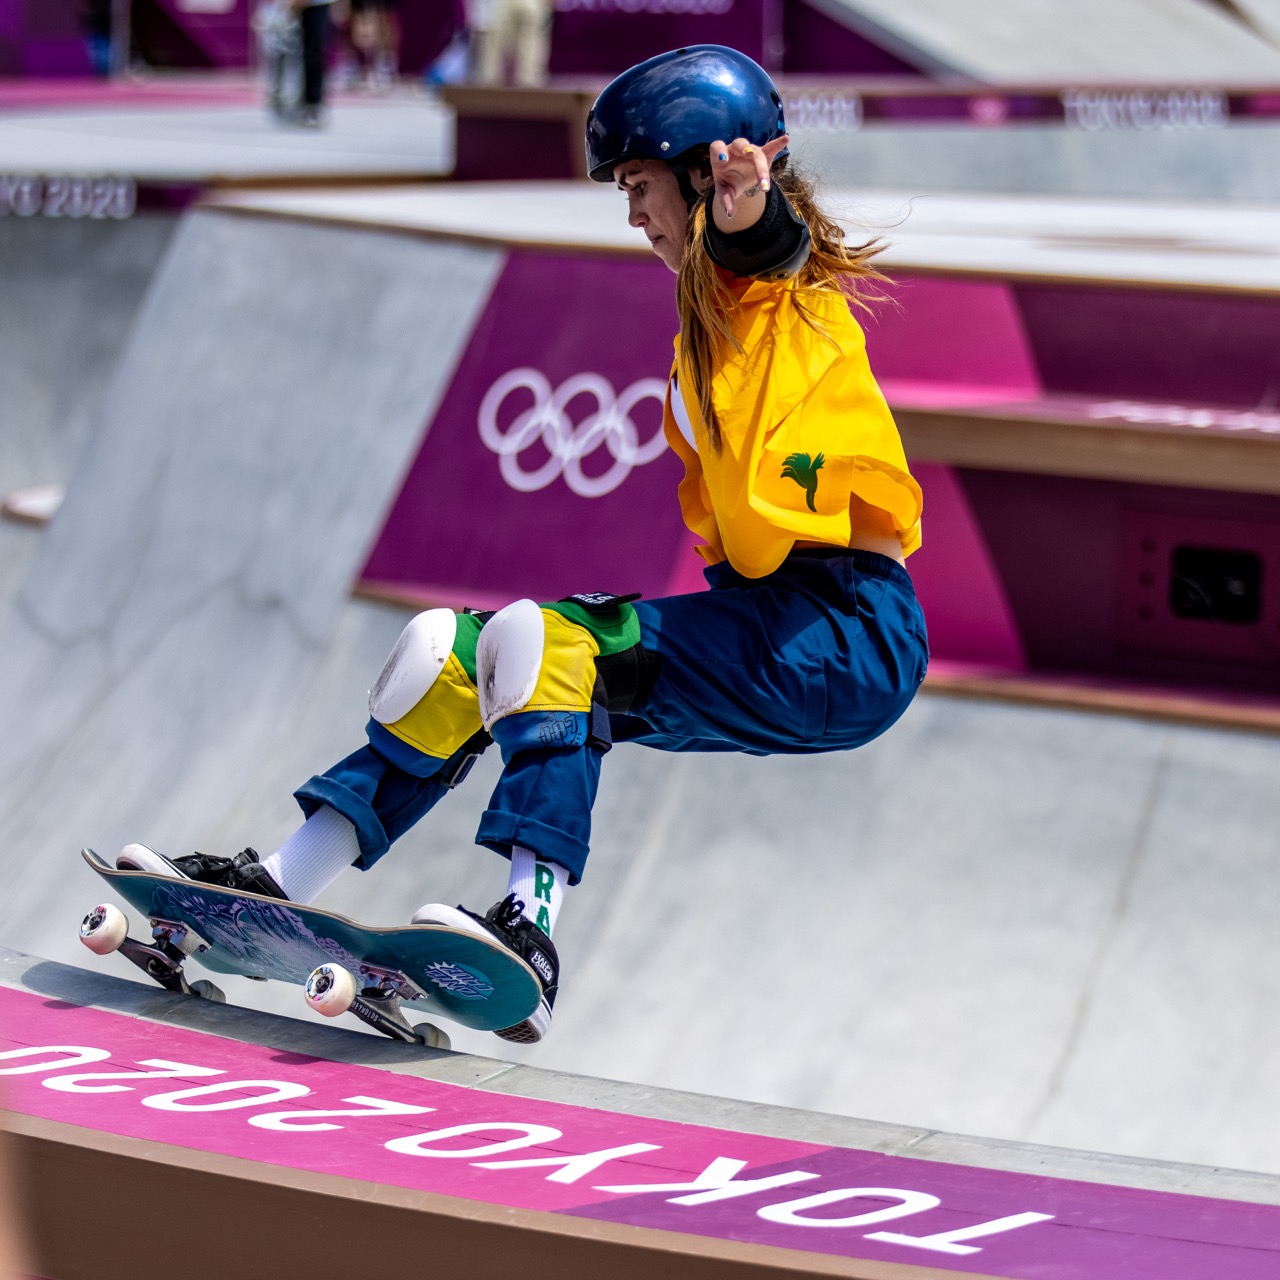 Olimpíada: Brasileiras ficam fora do pódio no skate park, em prova dominada por japonesas